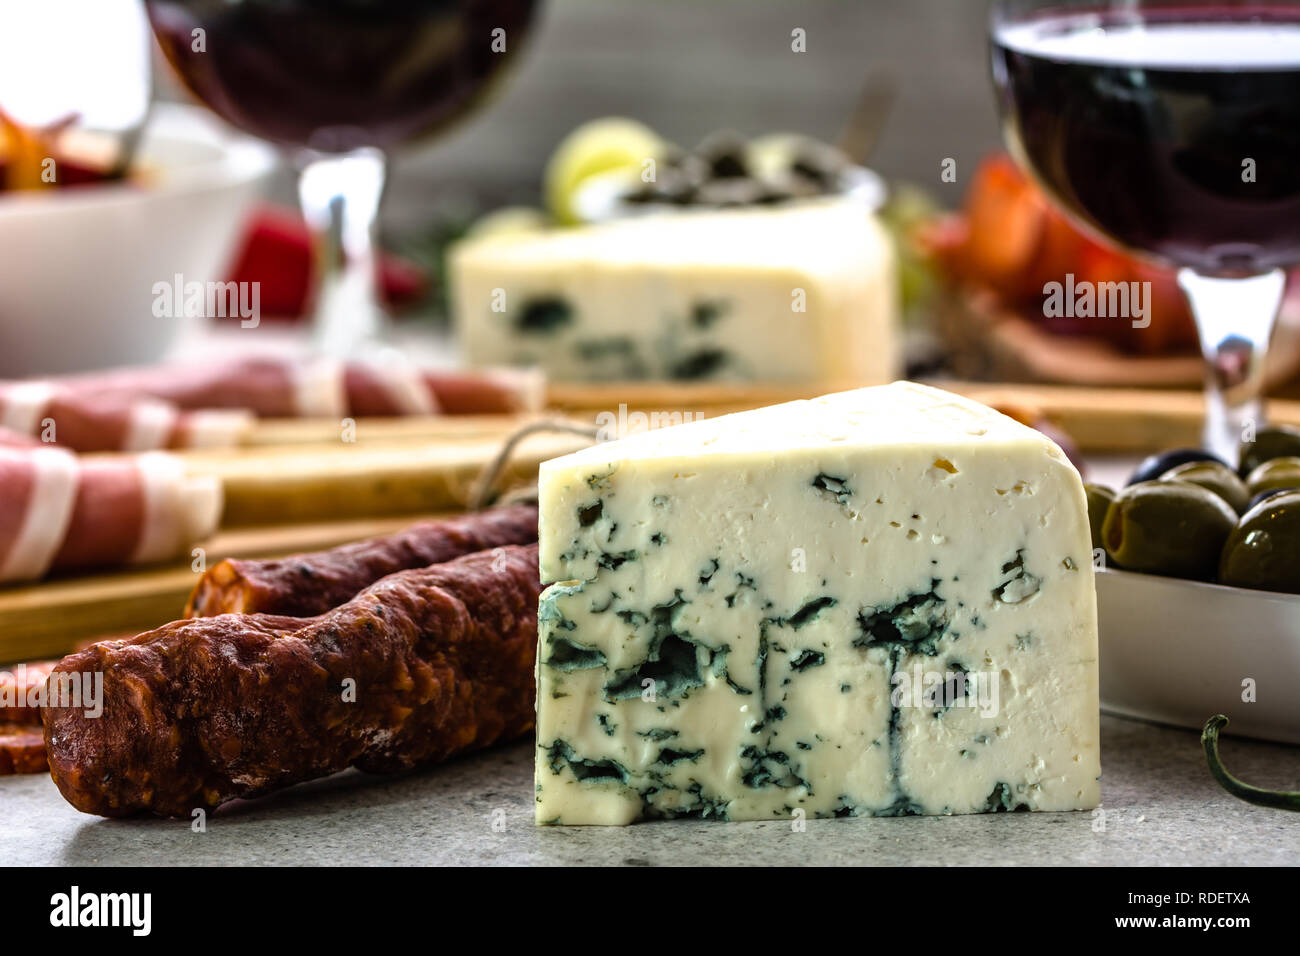 Blue Käse, Wein, Snacks, italienische Antipasti, die Auswahl an Speisen am Tisch Stockfoto